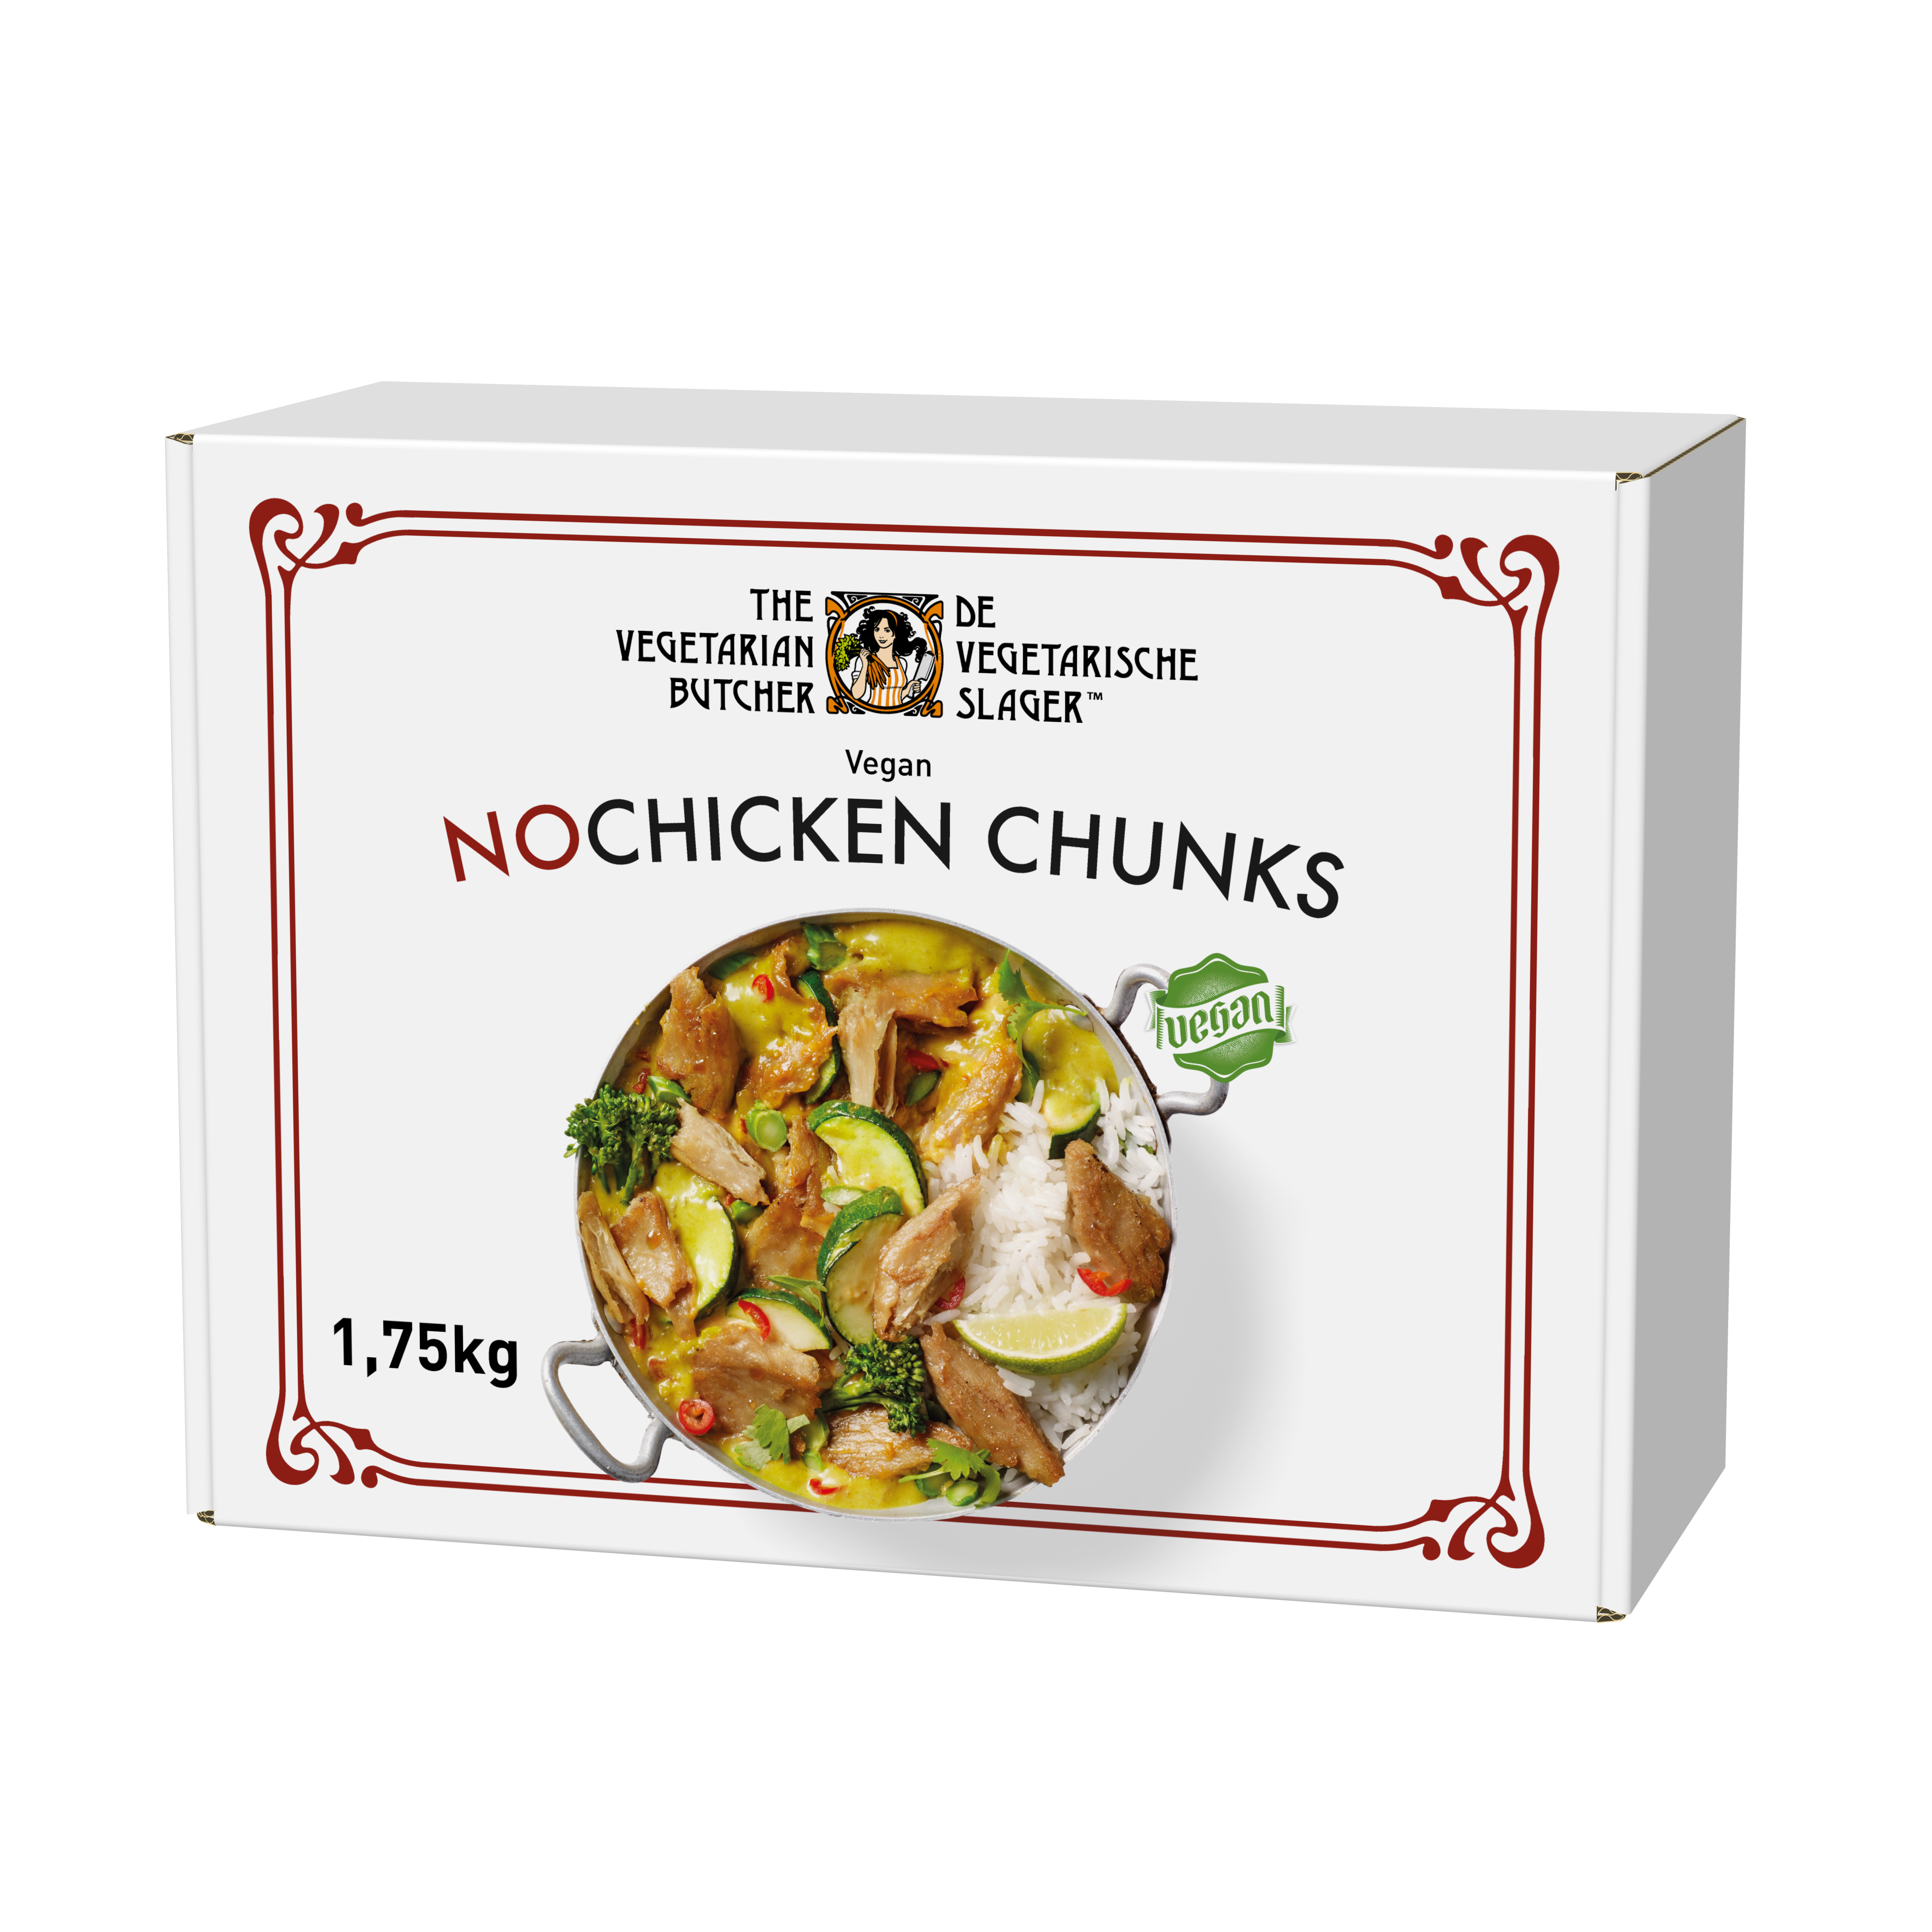 The Vegetarian Butcher NoChicken Chunks - Rastlinski sojini koščki 1,75 kg - Izdelki na osnovi rastlinskih beljakovin, okus in tekstura mesa